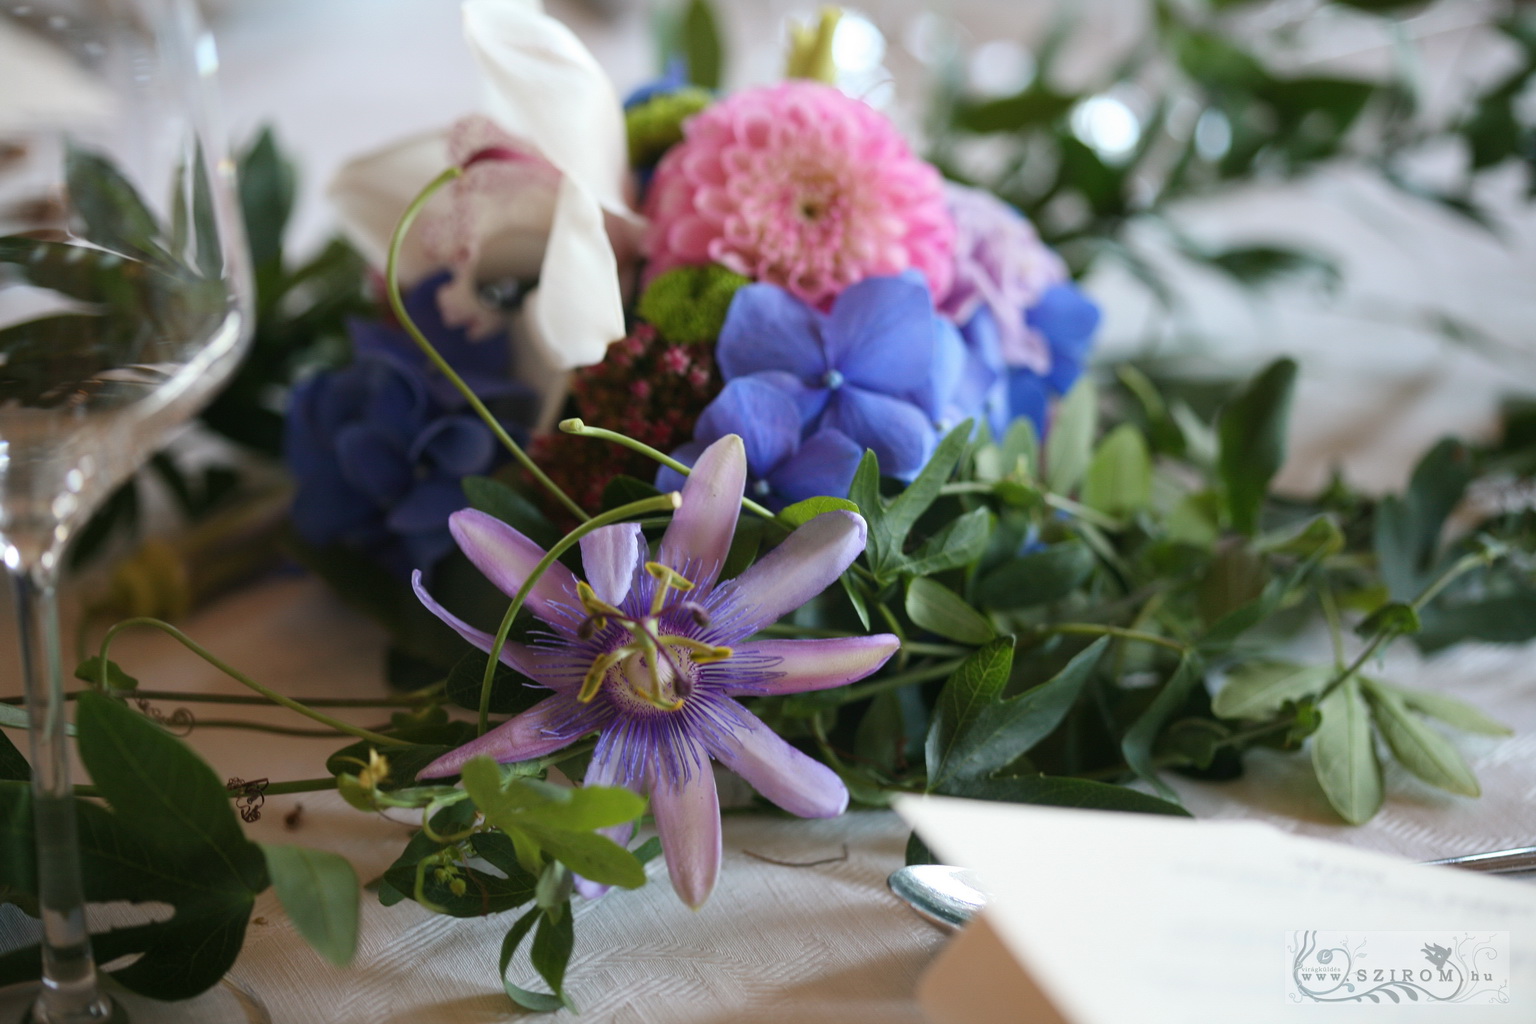 Virágküldés Budapest - Tekergő golgotás asztaldísz 1 m, Halászbástya étterem Budapest (kék, lila, dália, hortenzia), esküvő